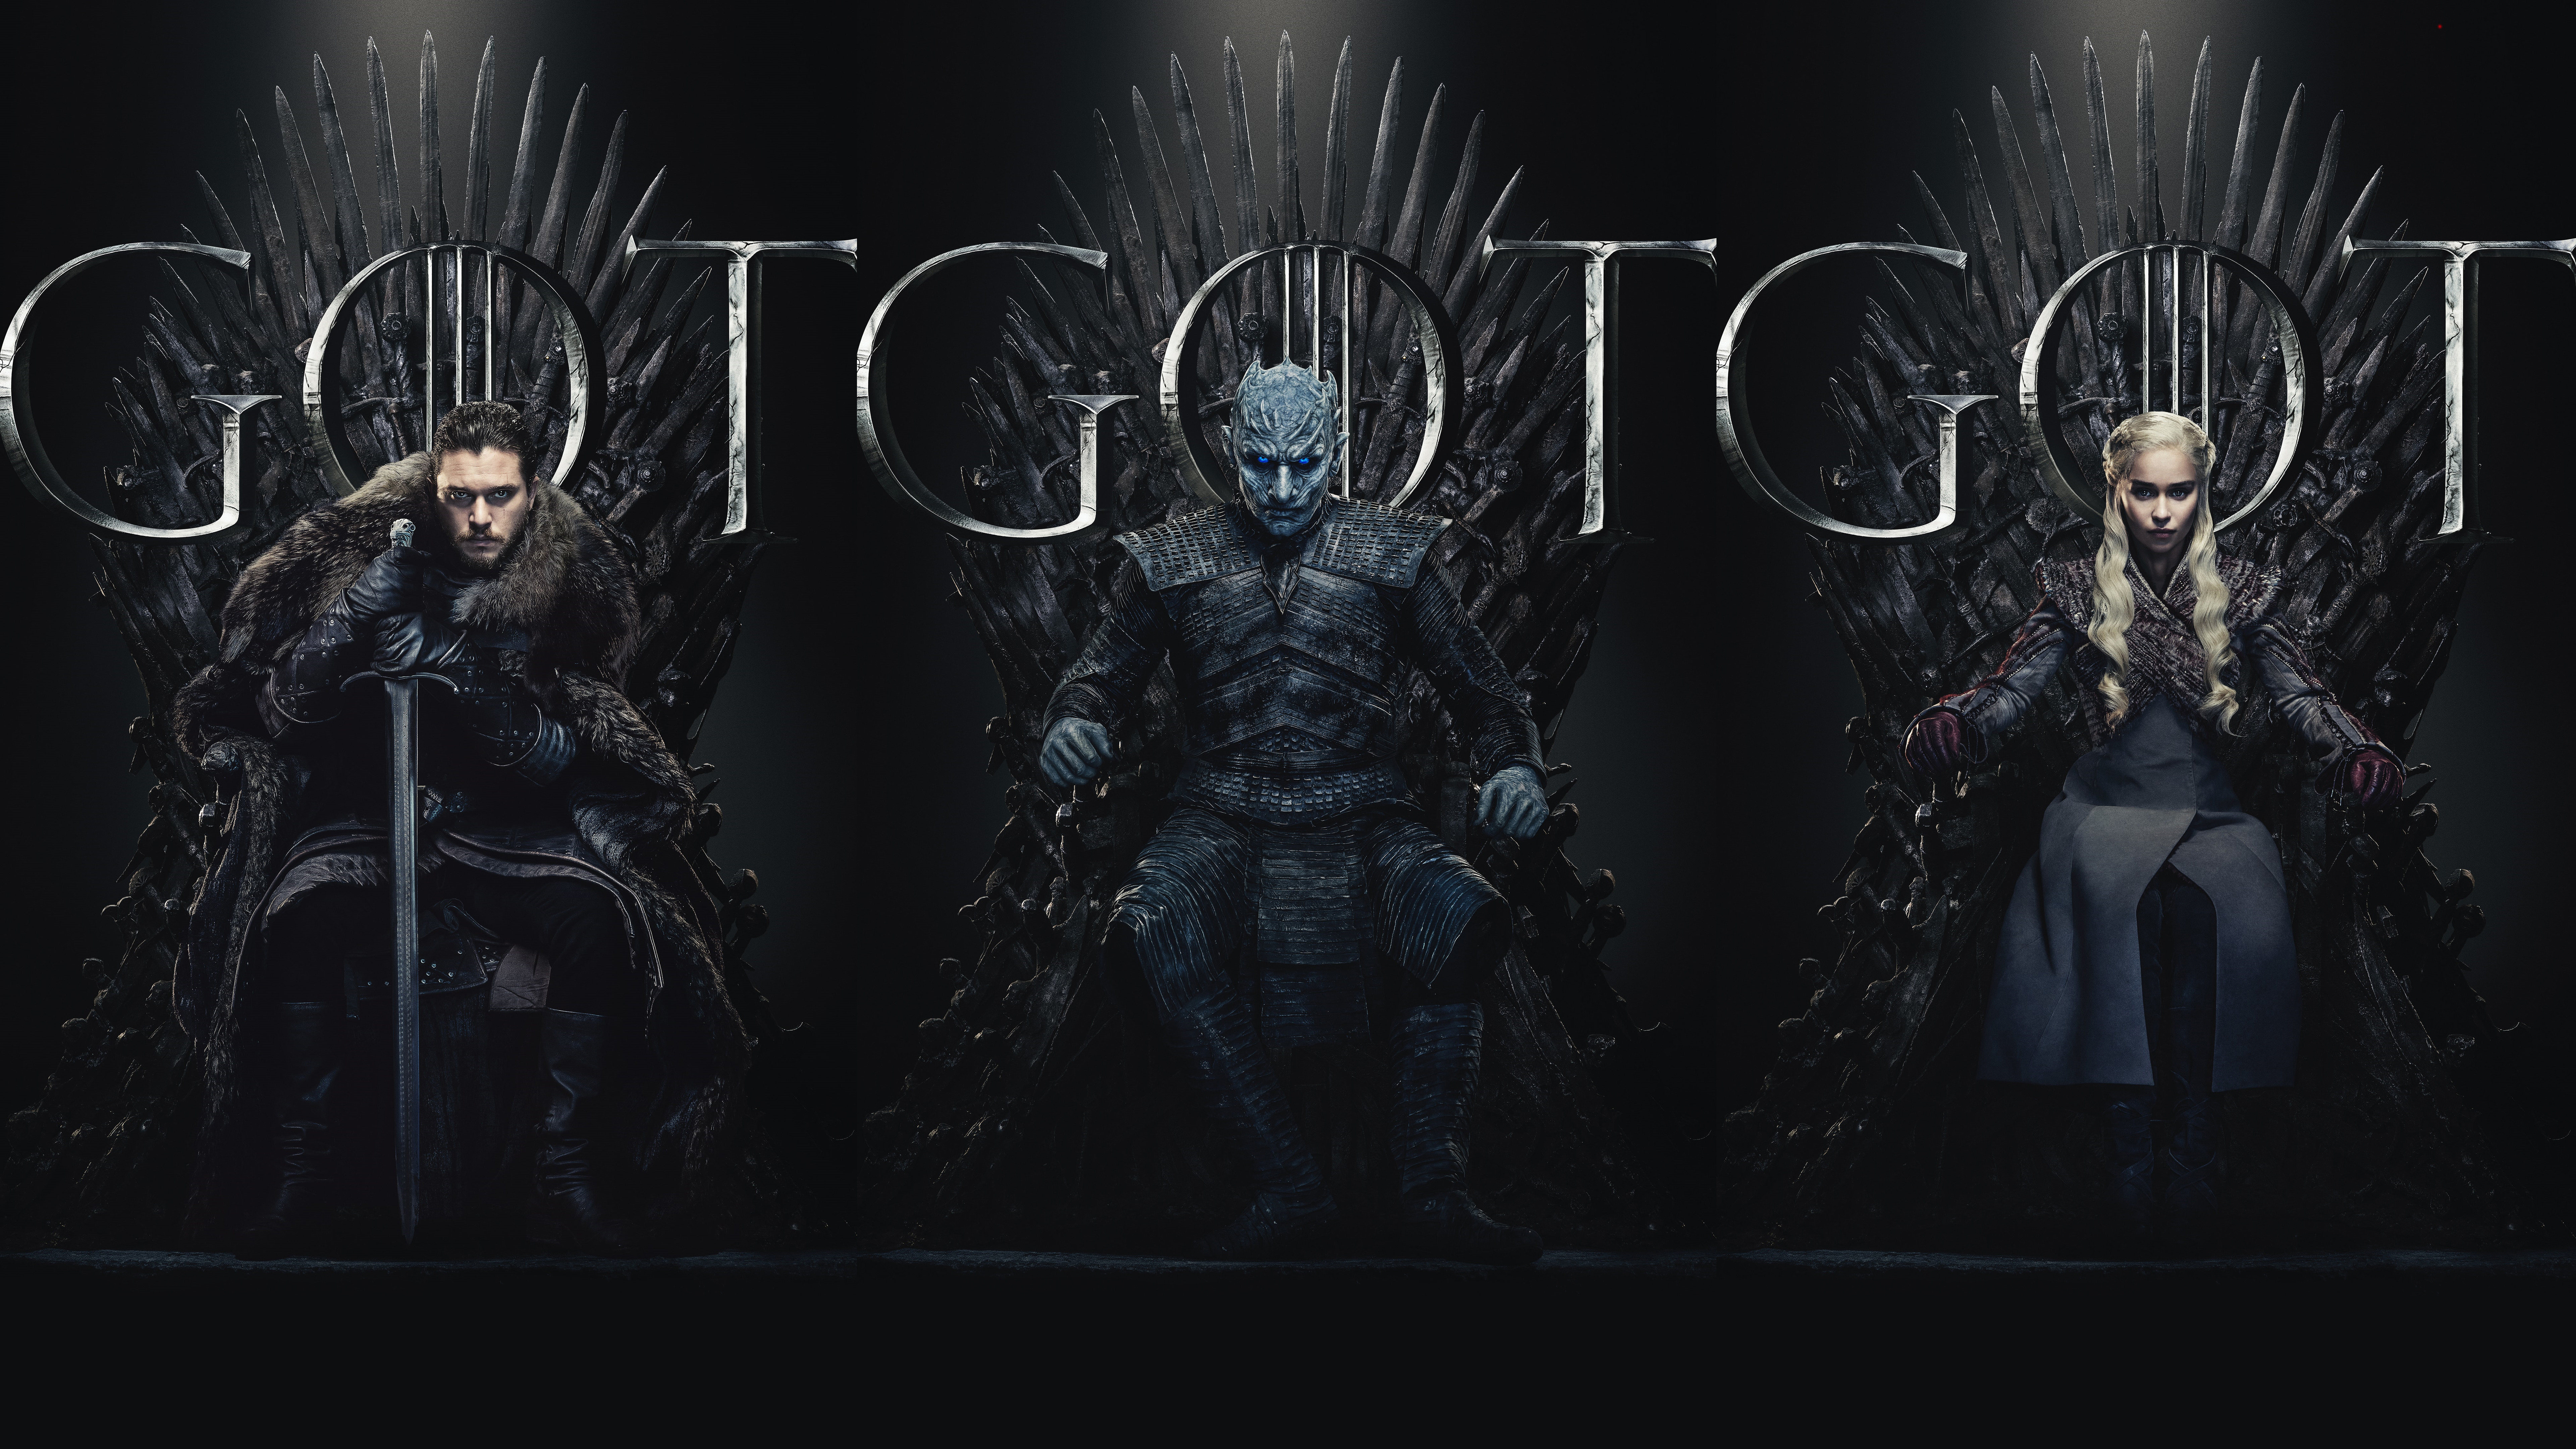 Wallpaper ID: 916120 / Aegon Targaryen, Jon Snow, war, 1080P, Game of  Thrones free download